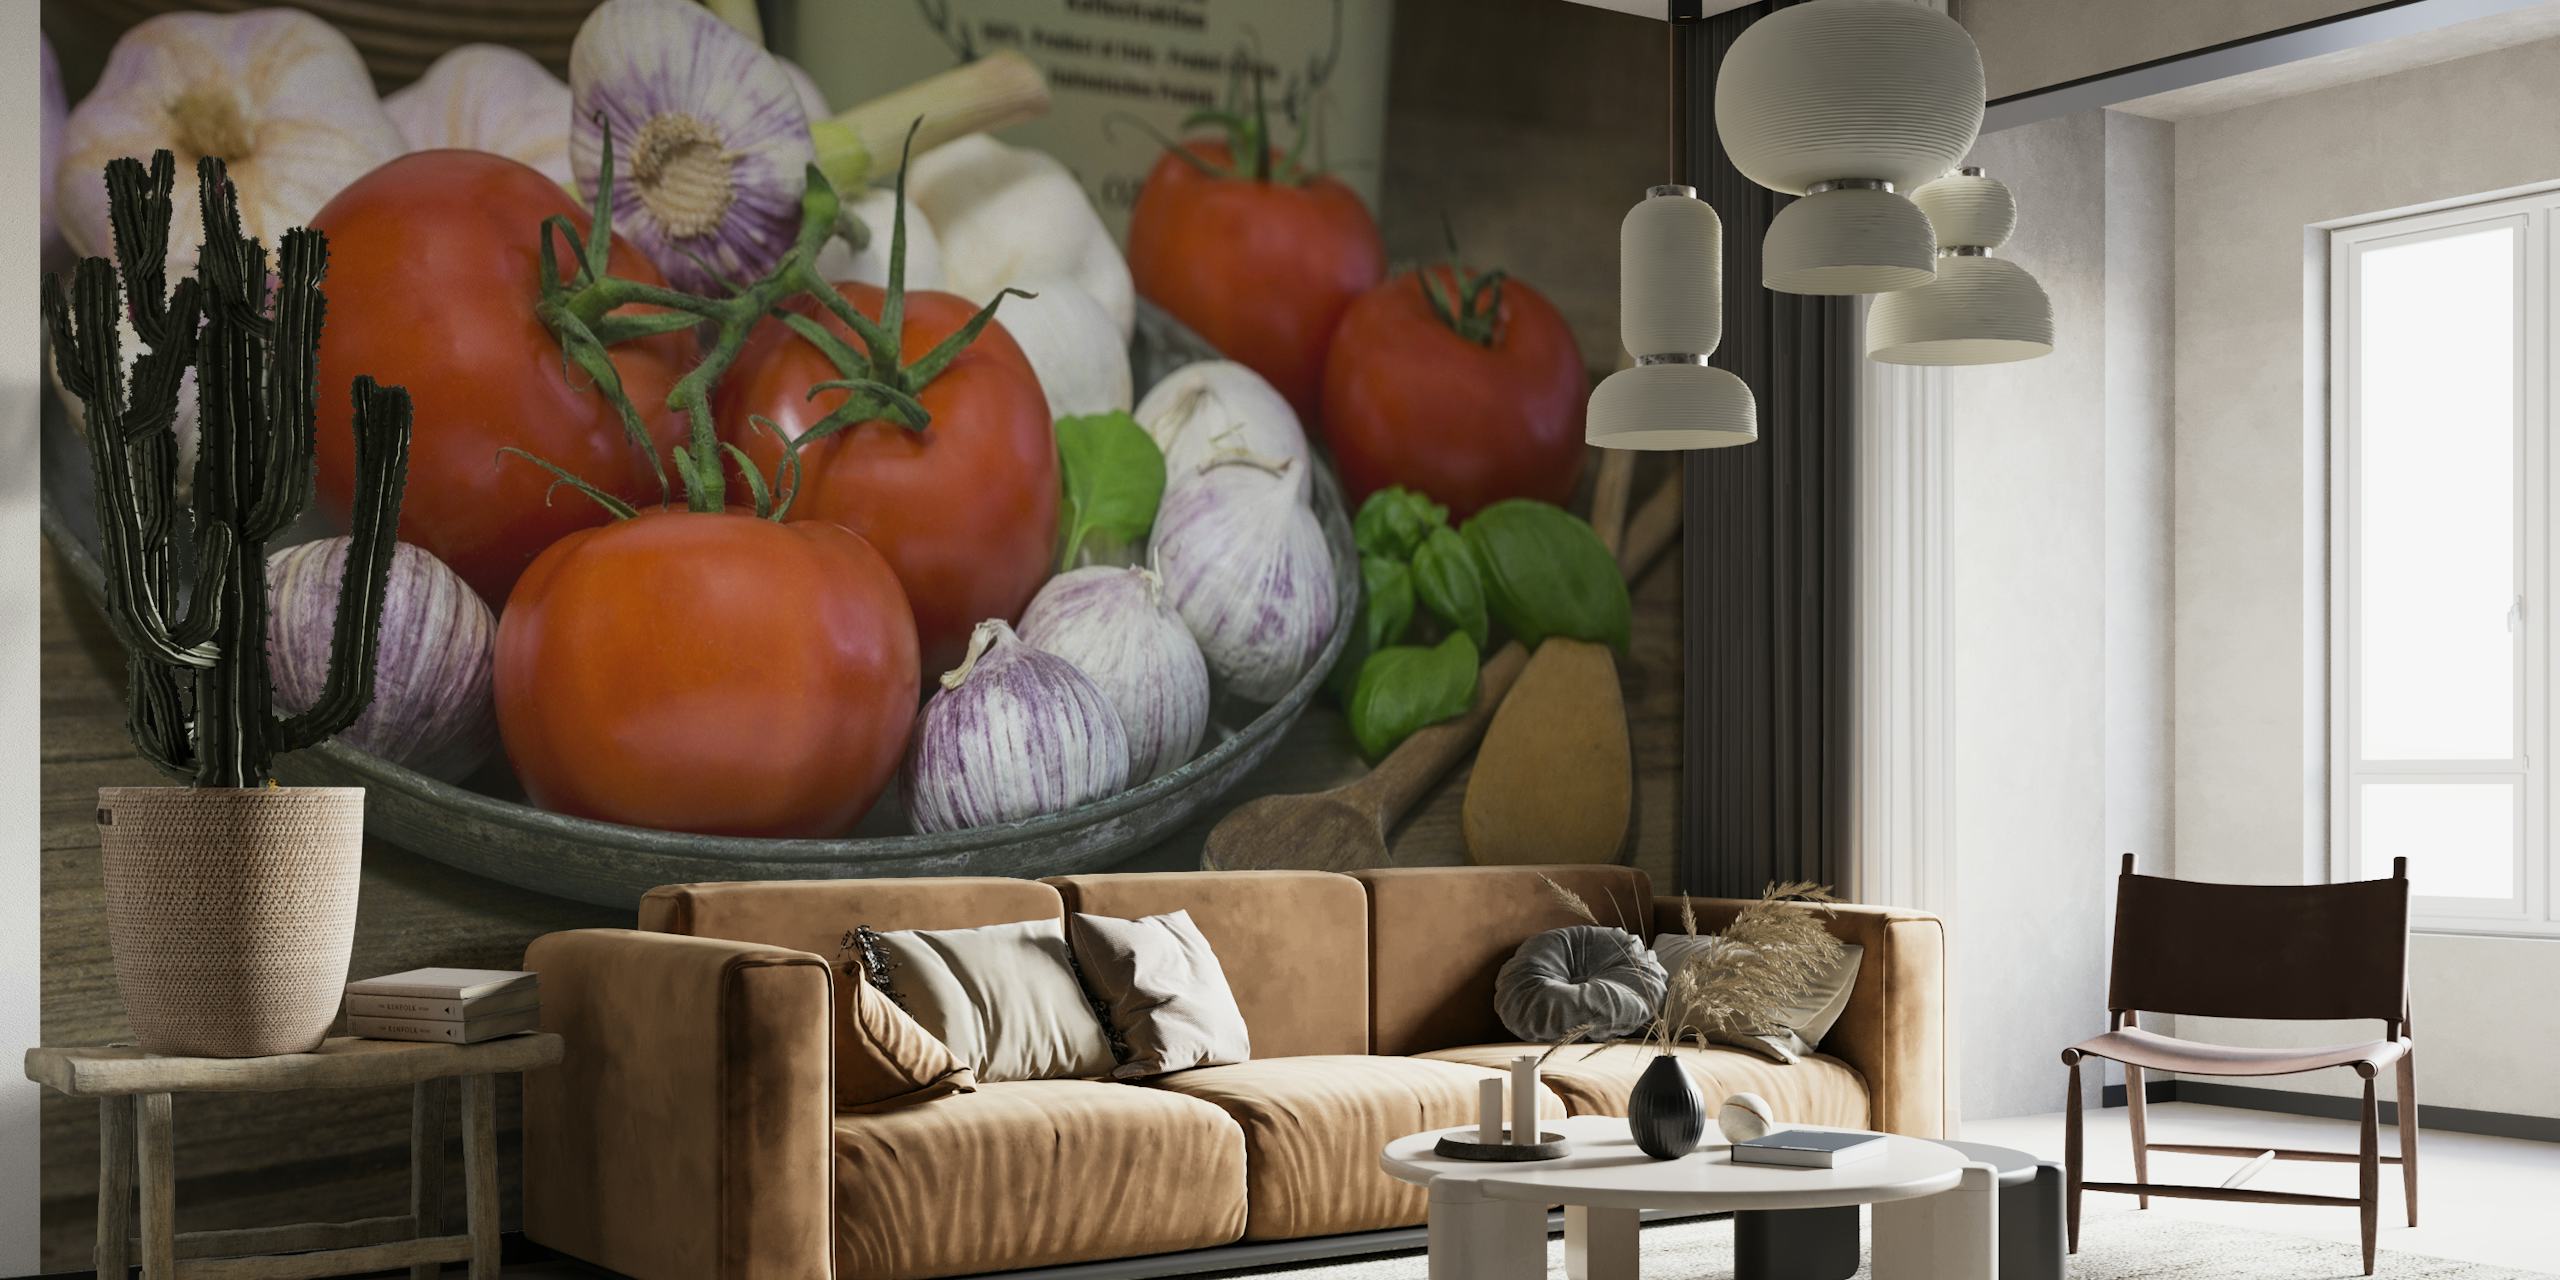 Zidni mural s osnovnim jelima talijanske kuhinje s rajčicama, češnjakom i bosiljkom na drvenom stolu